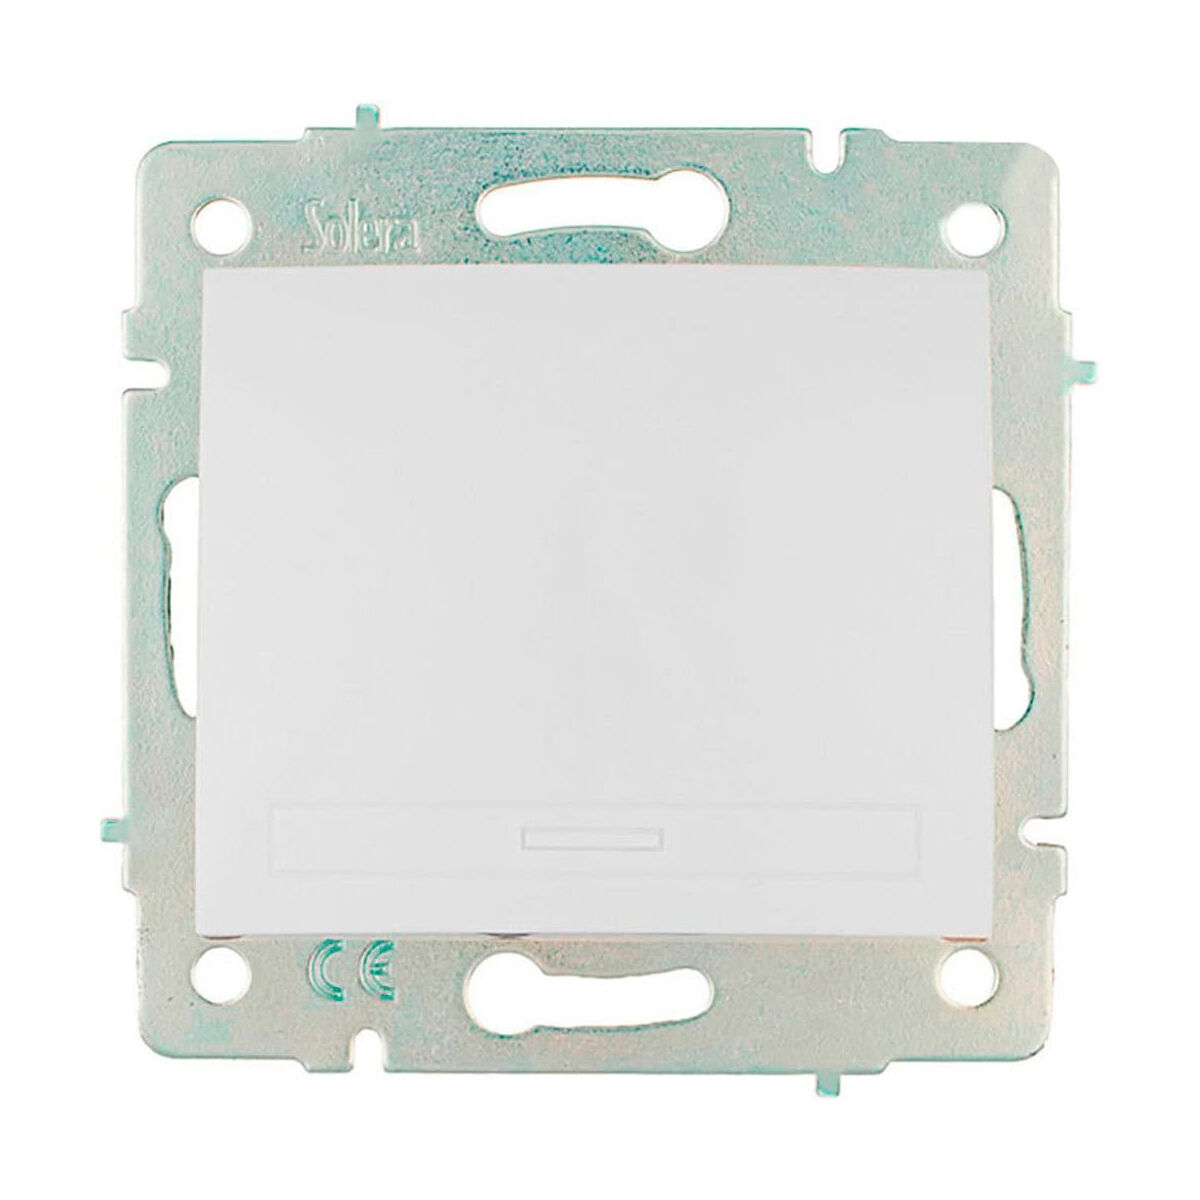 Interrupteur d'éclairage Solera erp02qc 8,3 x 8,1 cm